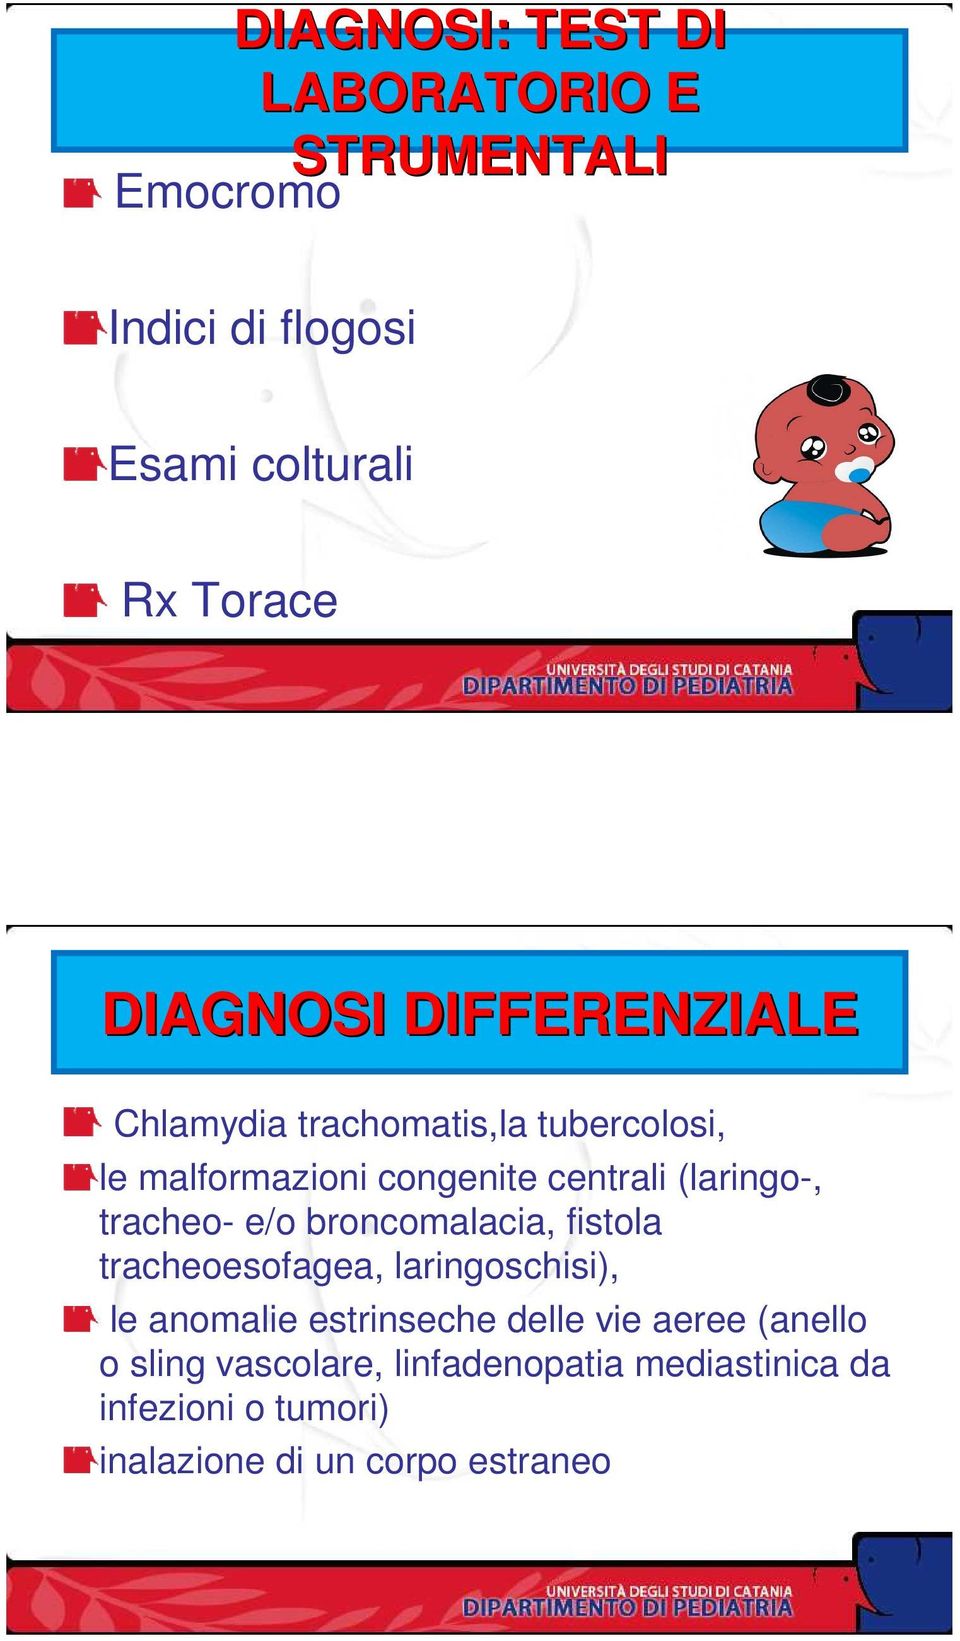 tracheo- e/o broncomalacia, fistola tracheoesofagea, laringoschisi), le anomalie estrinseche delle vie